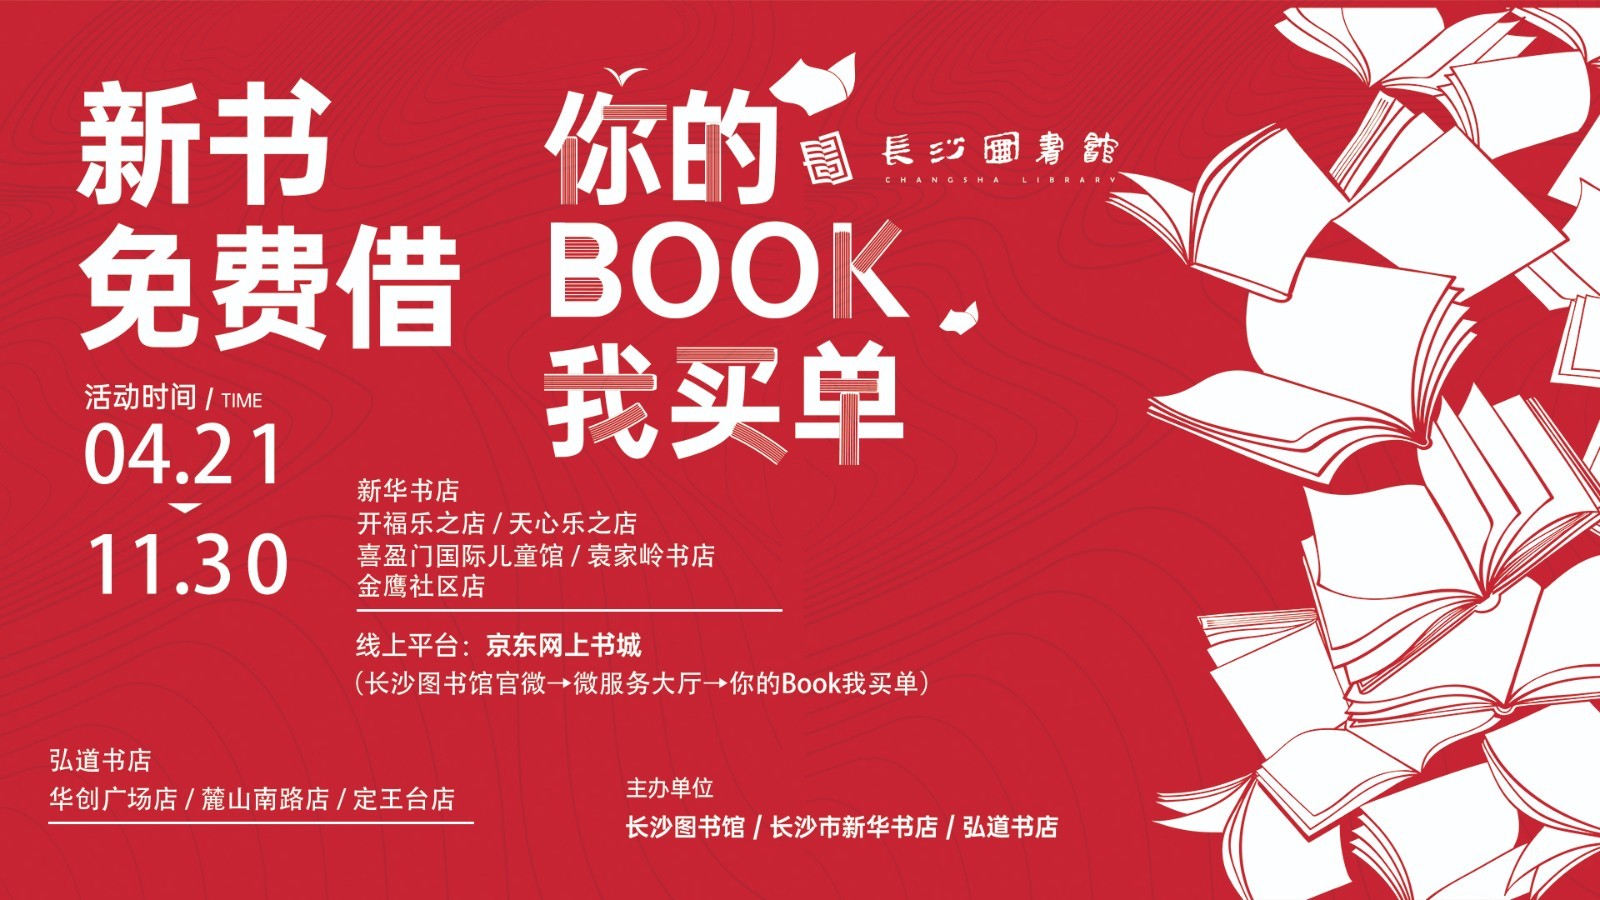 长沙图书馆4月21日启动“你的book”我买单活动